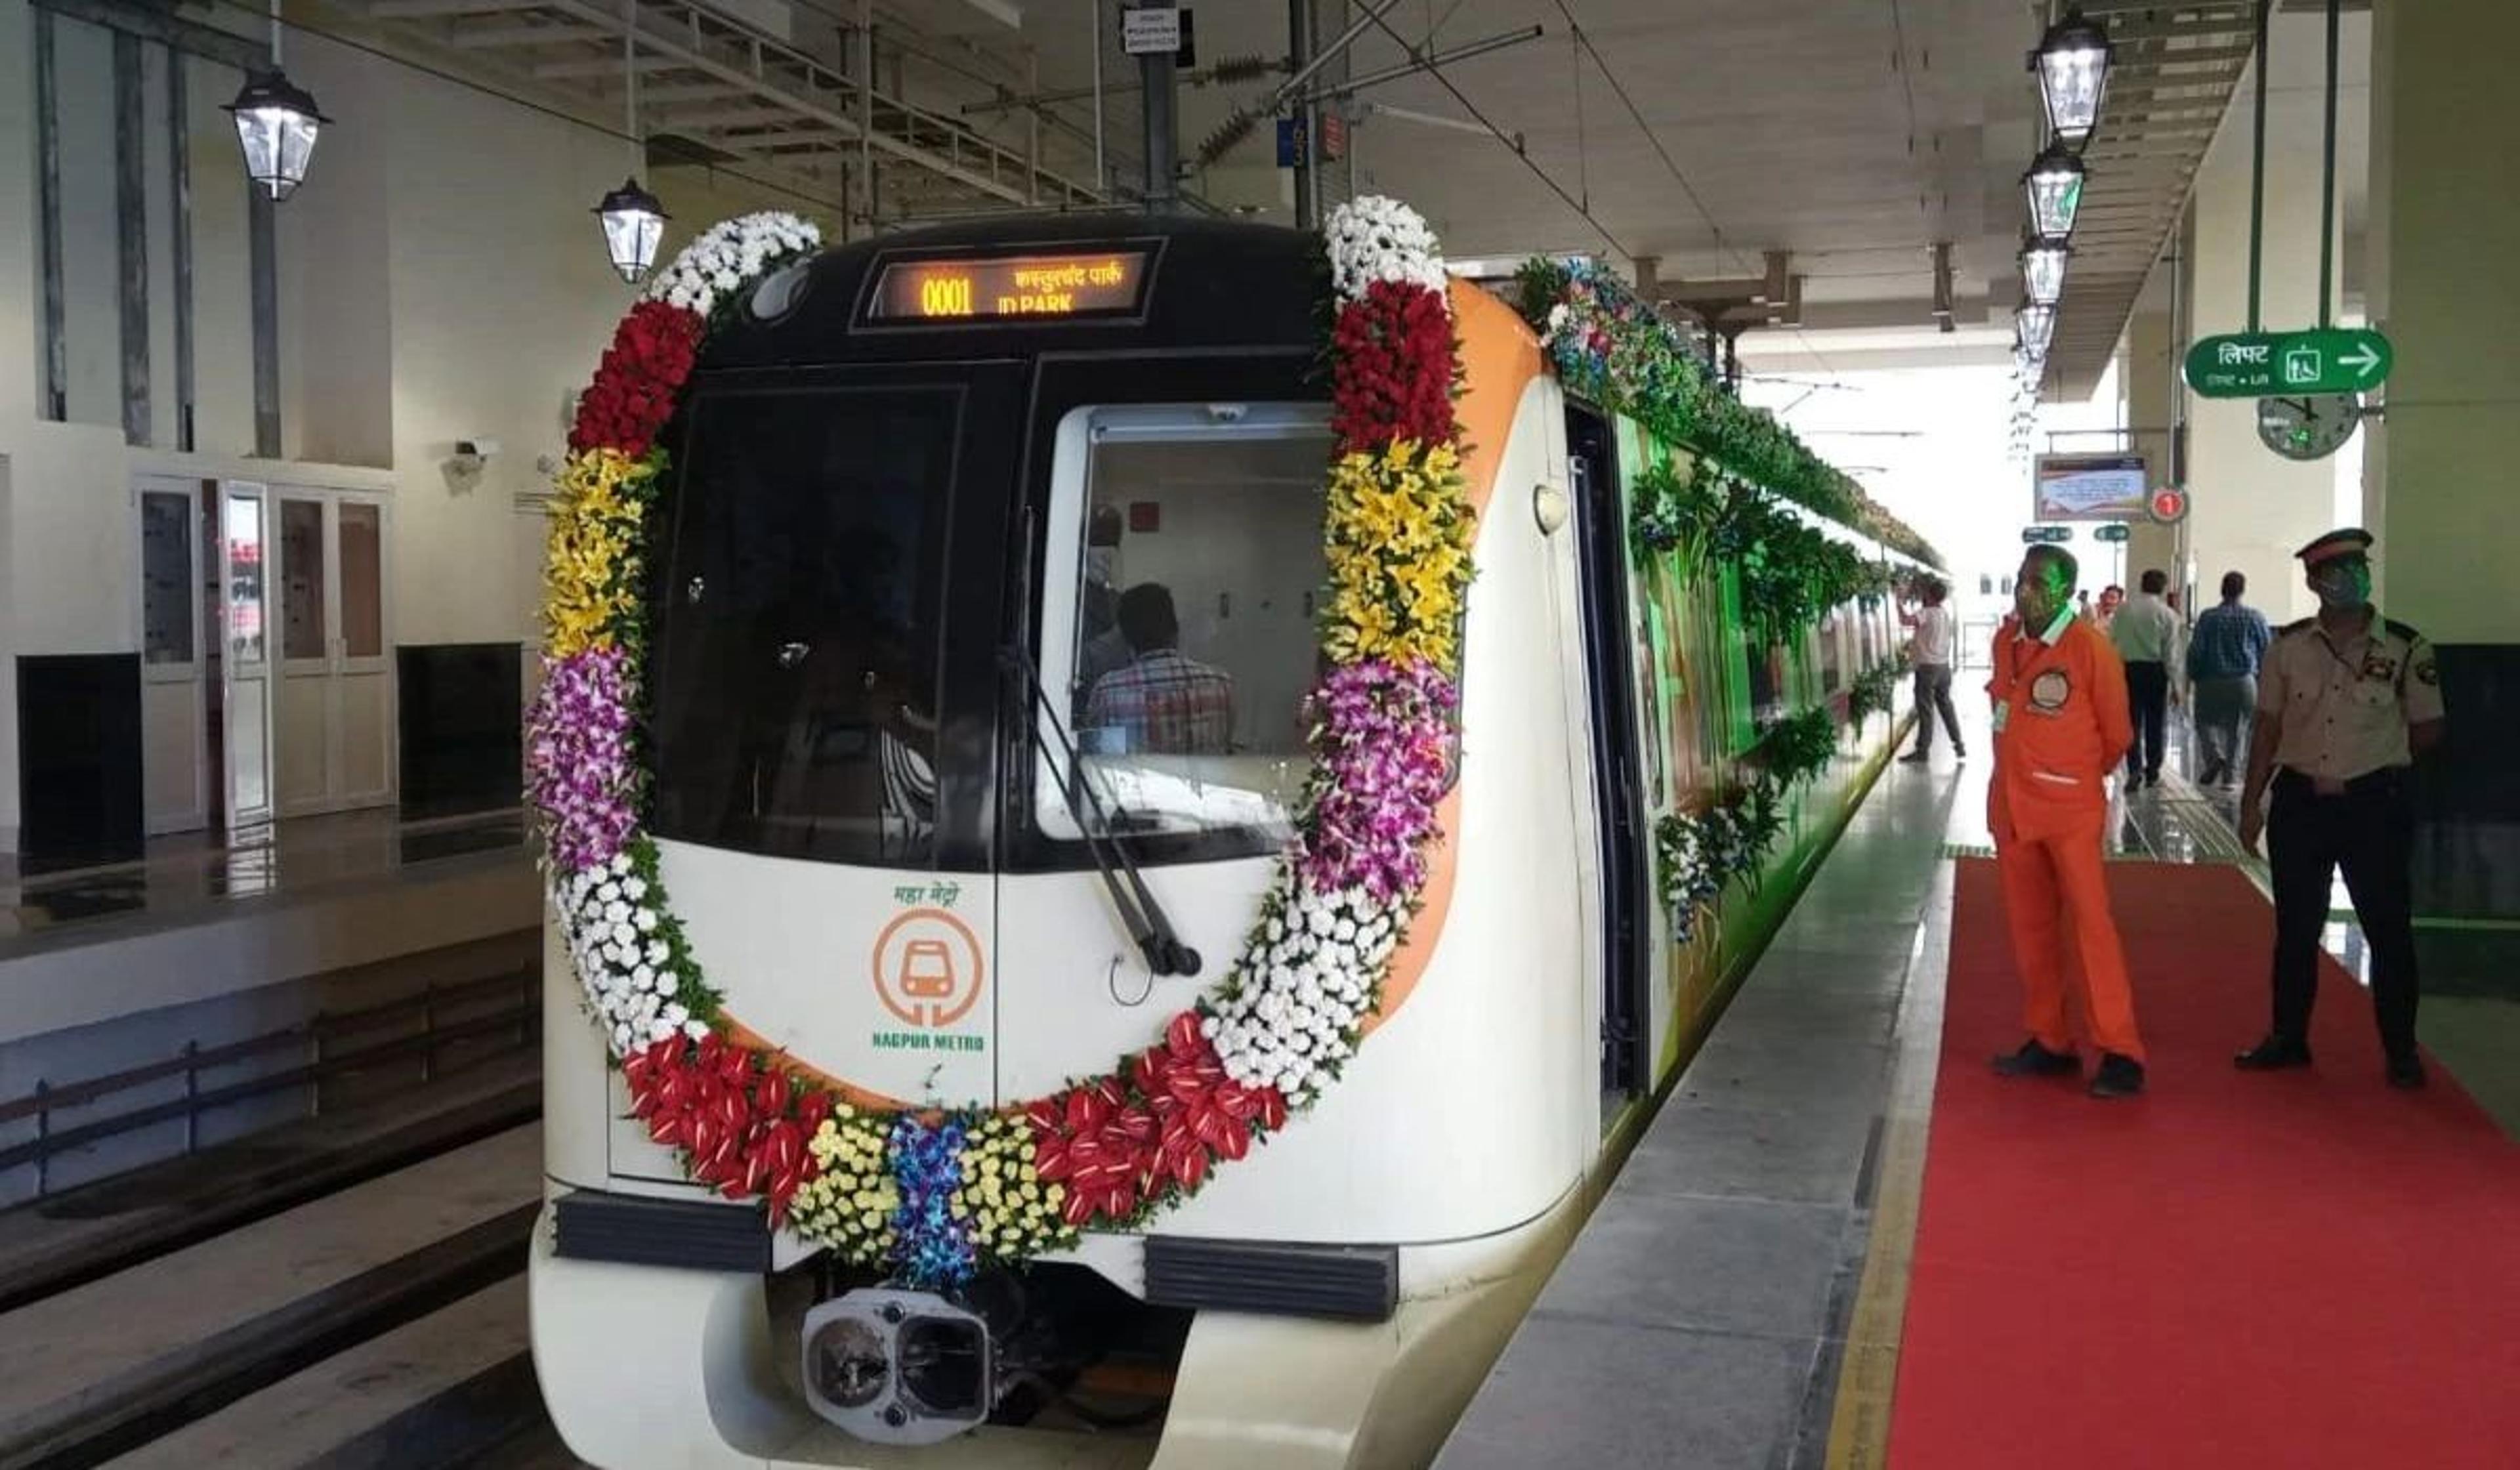 Vande Bharat Metro Train: खुशखबरी! सवा घंटे में पहुंचेंगे दिल्ली, यूपी को वंदे
भारत मेट्रो ट्रेन की मिलने जा रही सौगात